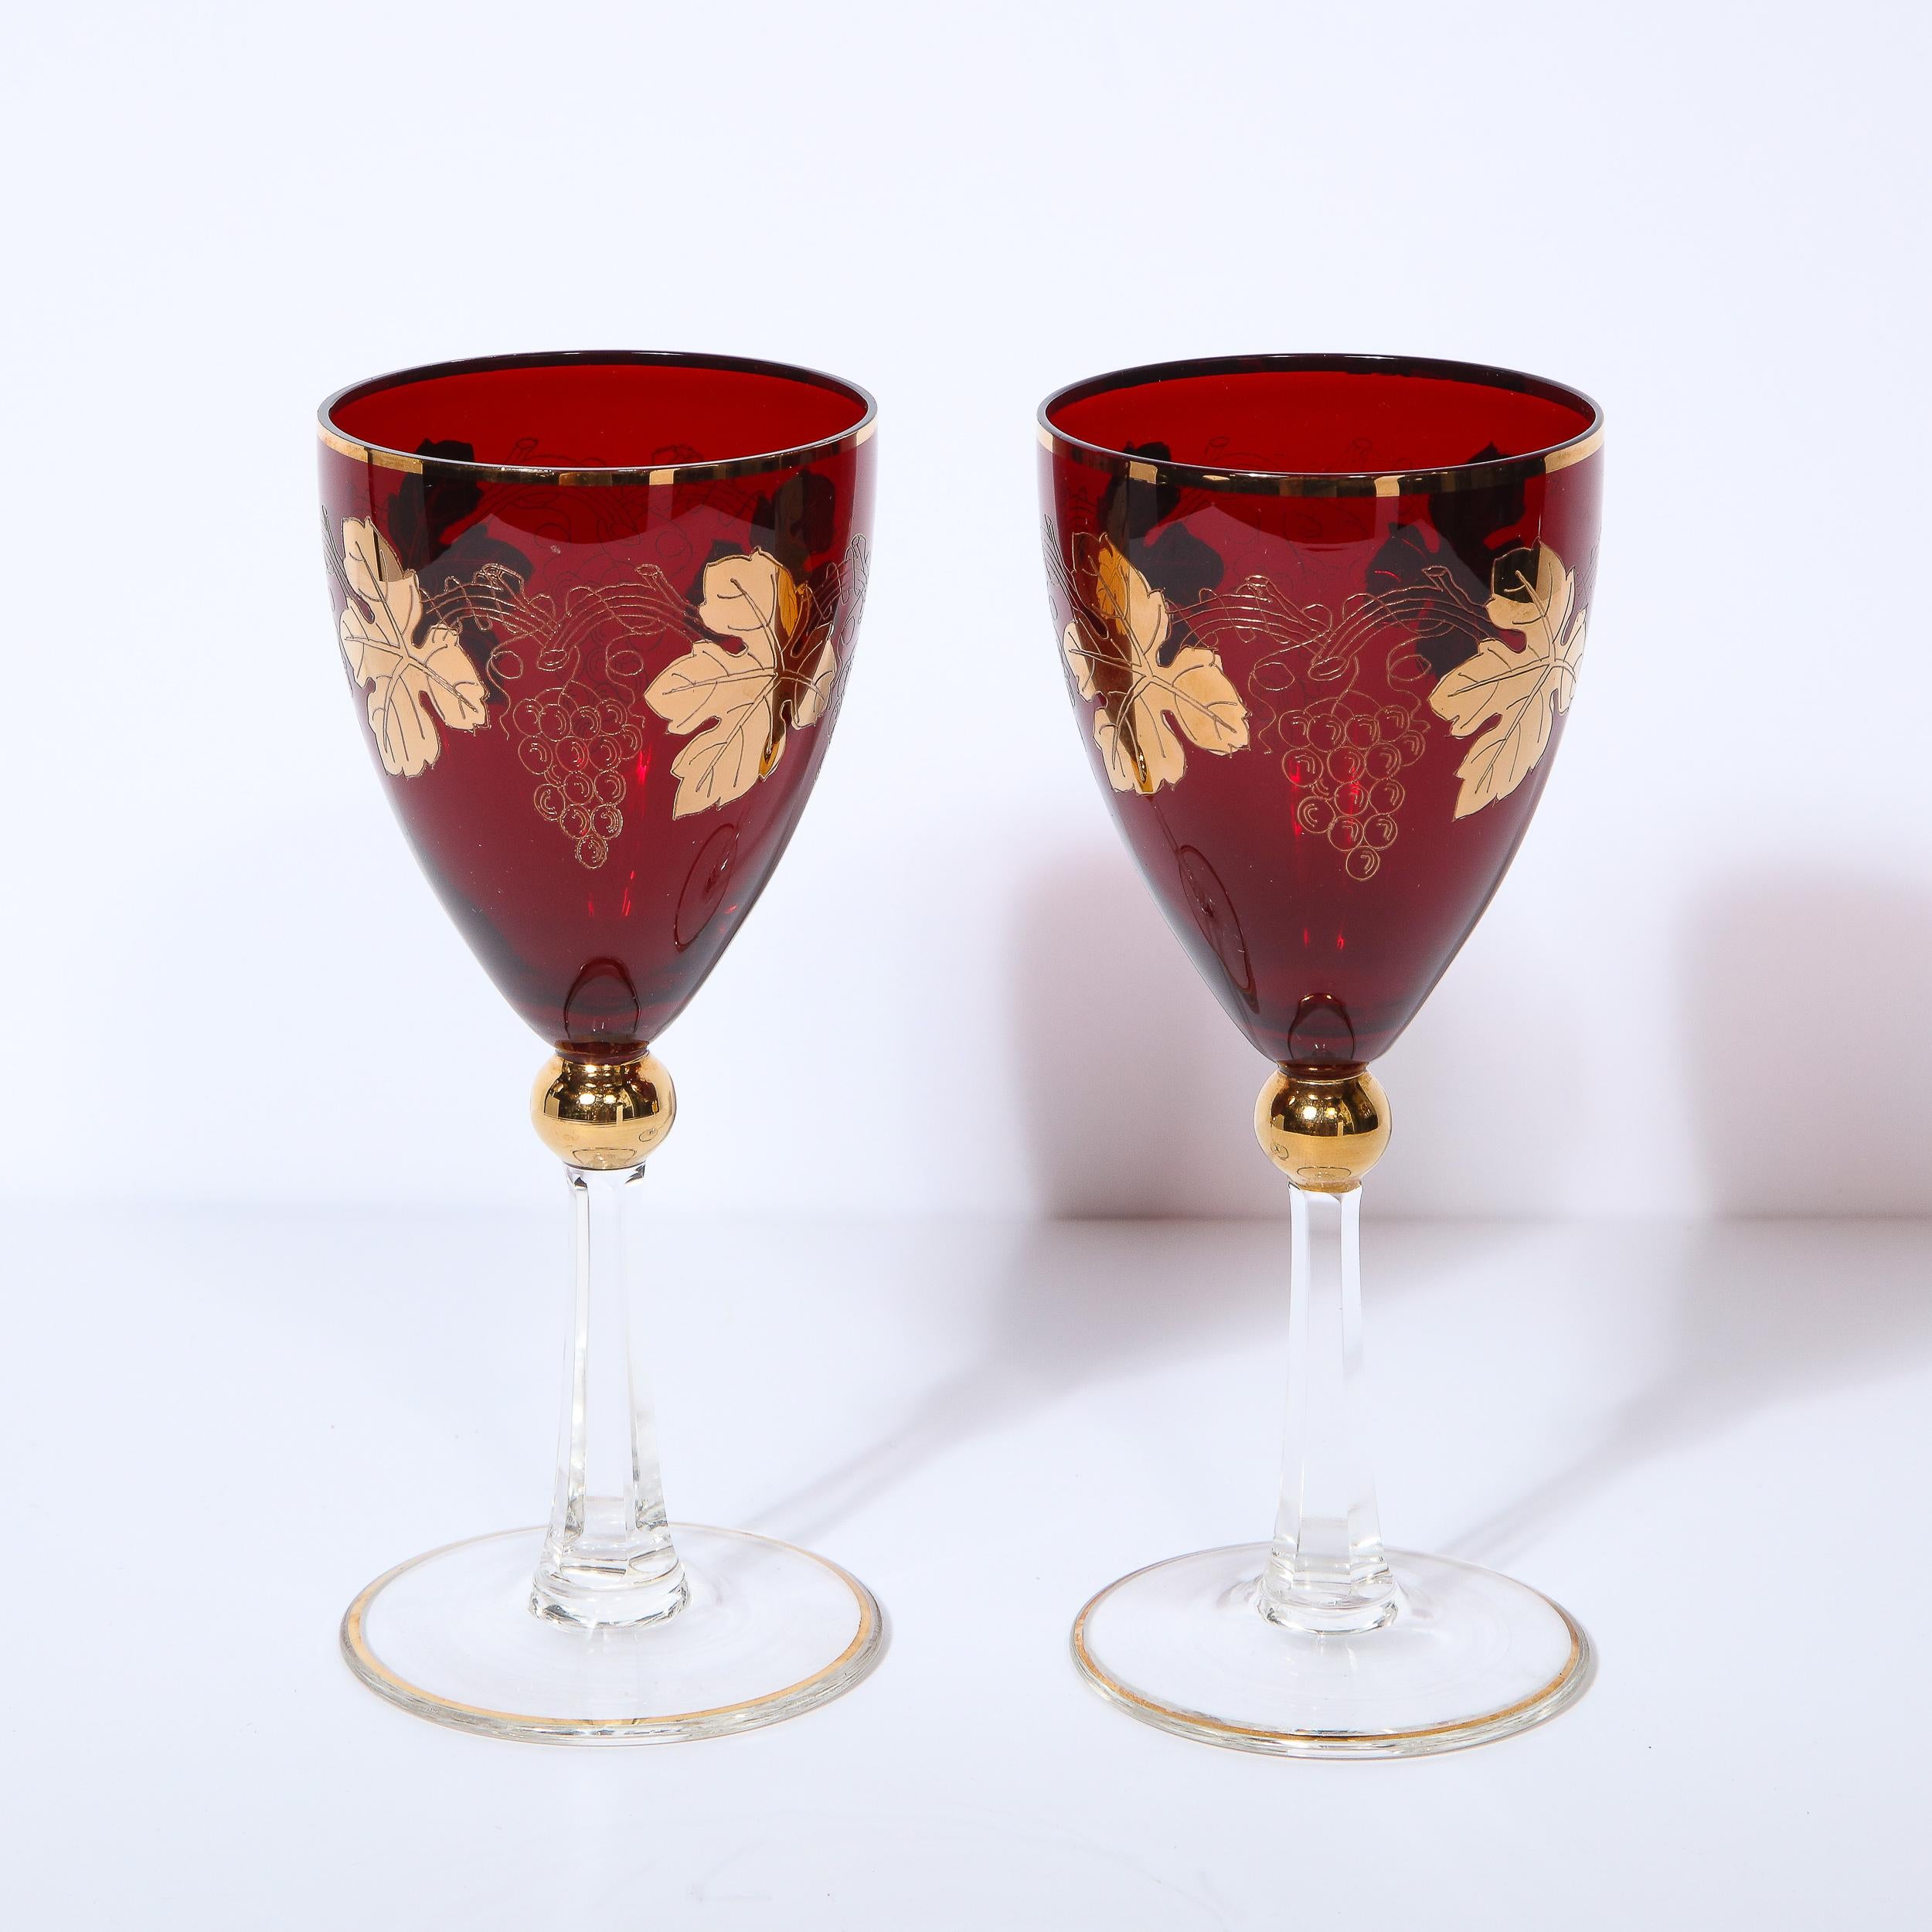 Ce superbe ensemble de huit verres à vin Art déco a été réalisé aux États-Unis vers 1940. Elles présentent des bases circulaires et des tiges facettées en verre translucide, coiffées d'un embellissement sphérique recouvert d'or 24kt. Le calice est